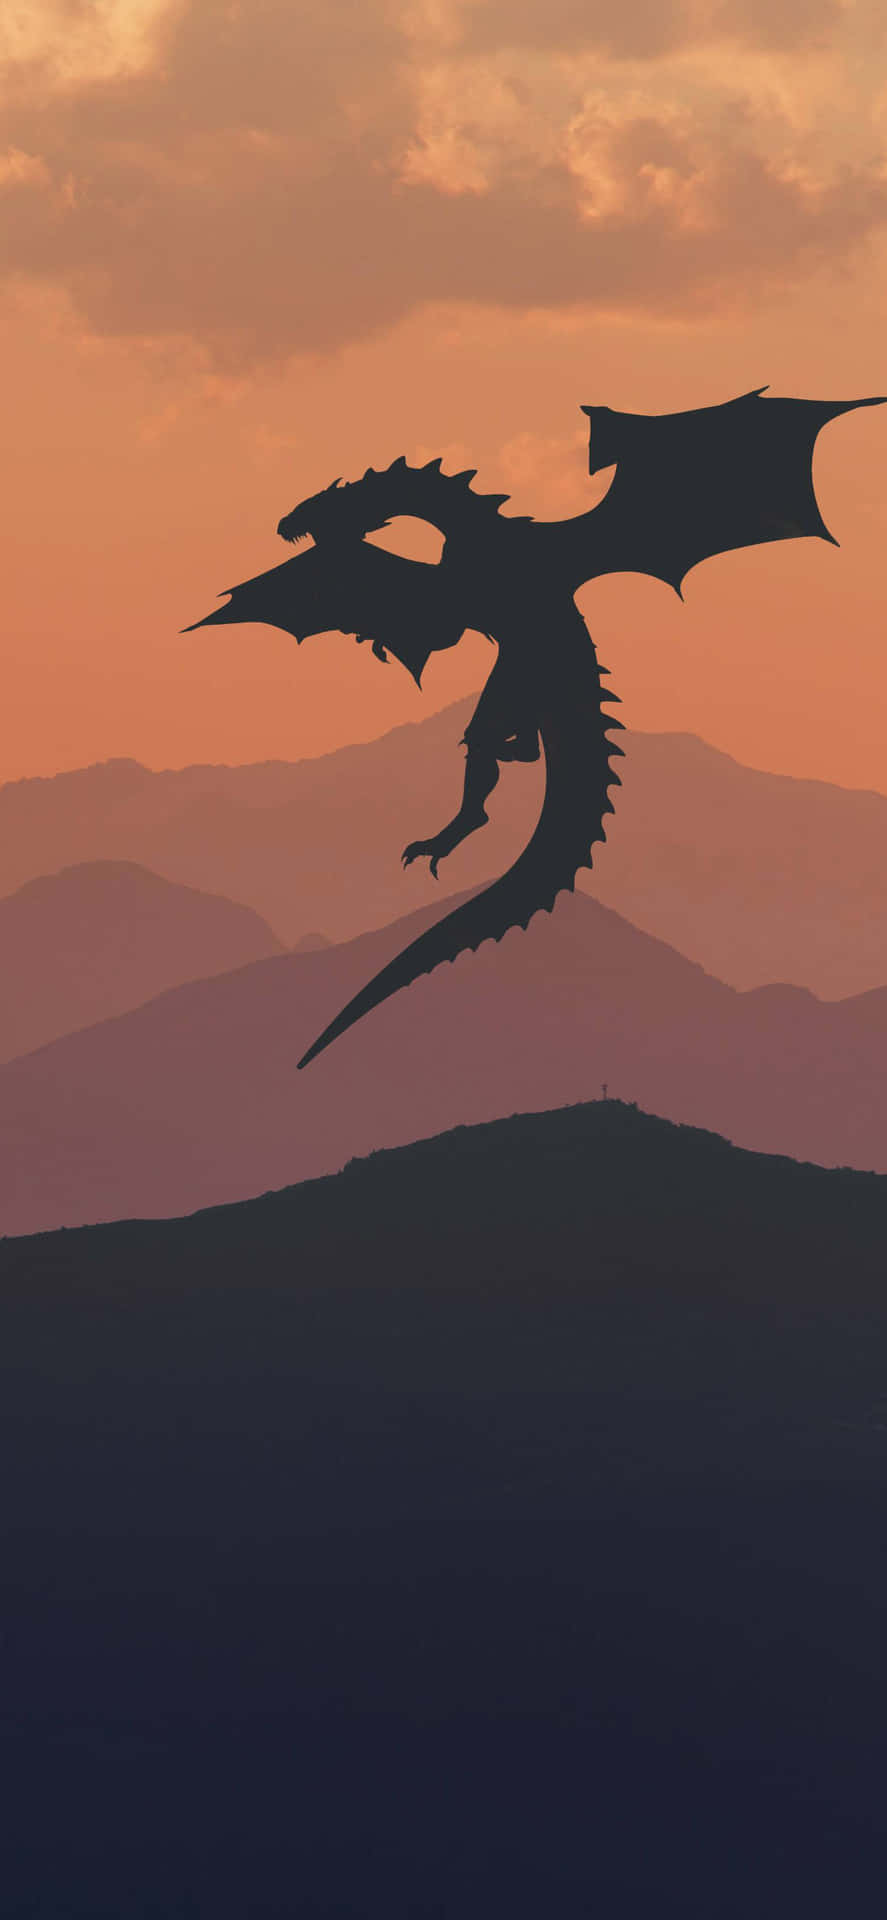 Bakgrundsbilderupptäck Världen Av Westeros Igen Genom Game Of Thrones Iphone Bakgrundsbilder. Wallpaper